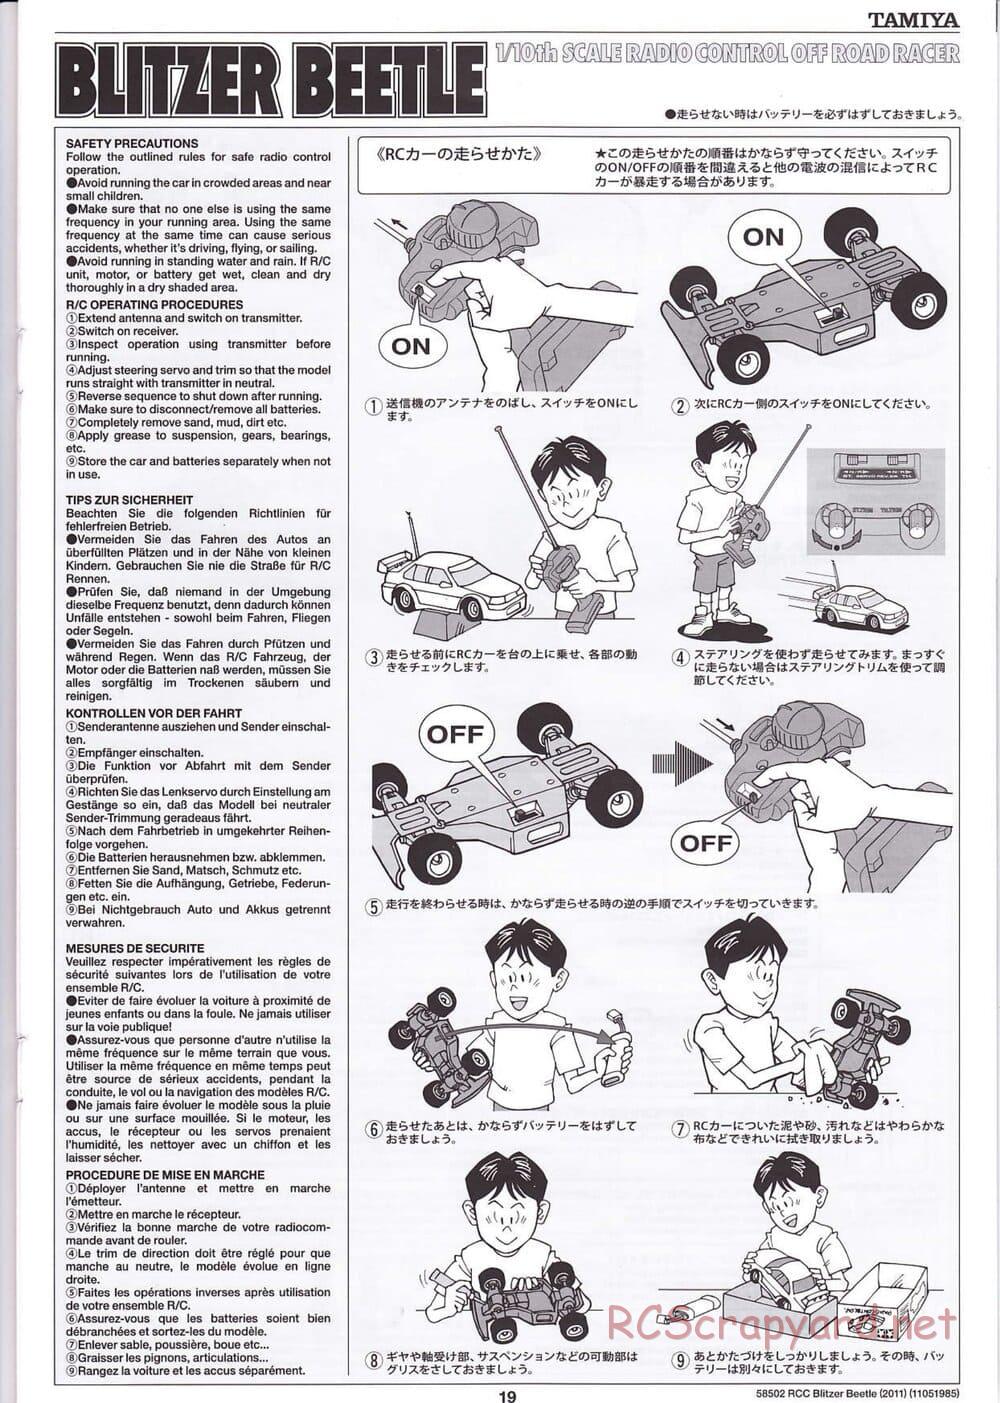 Tamiya - Blitzer Beetle 2011 - FAL Chassis - Manual - Page 19